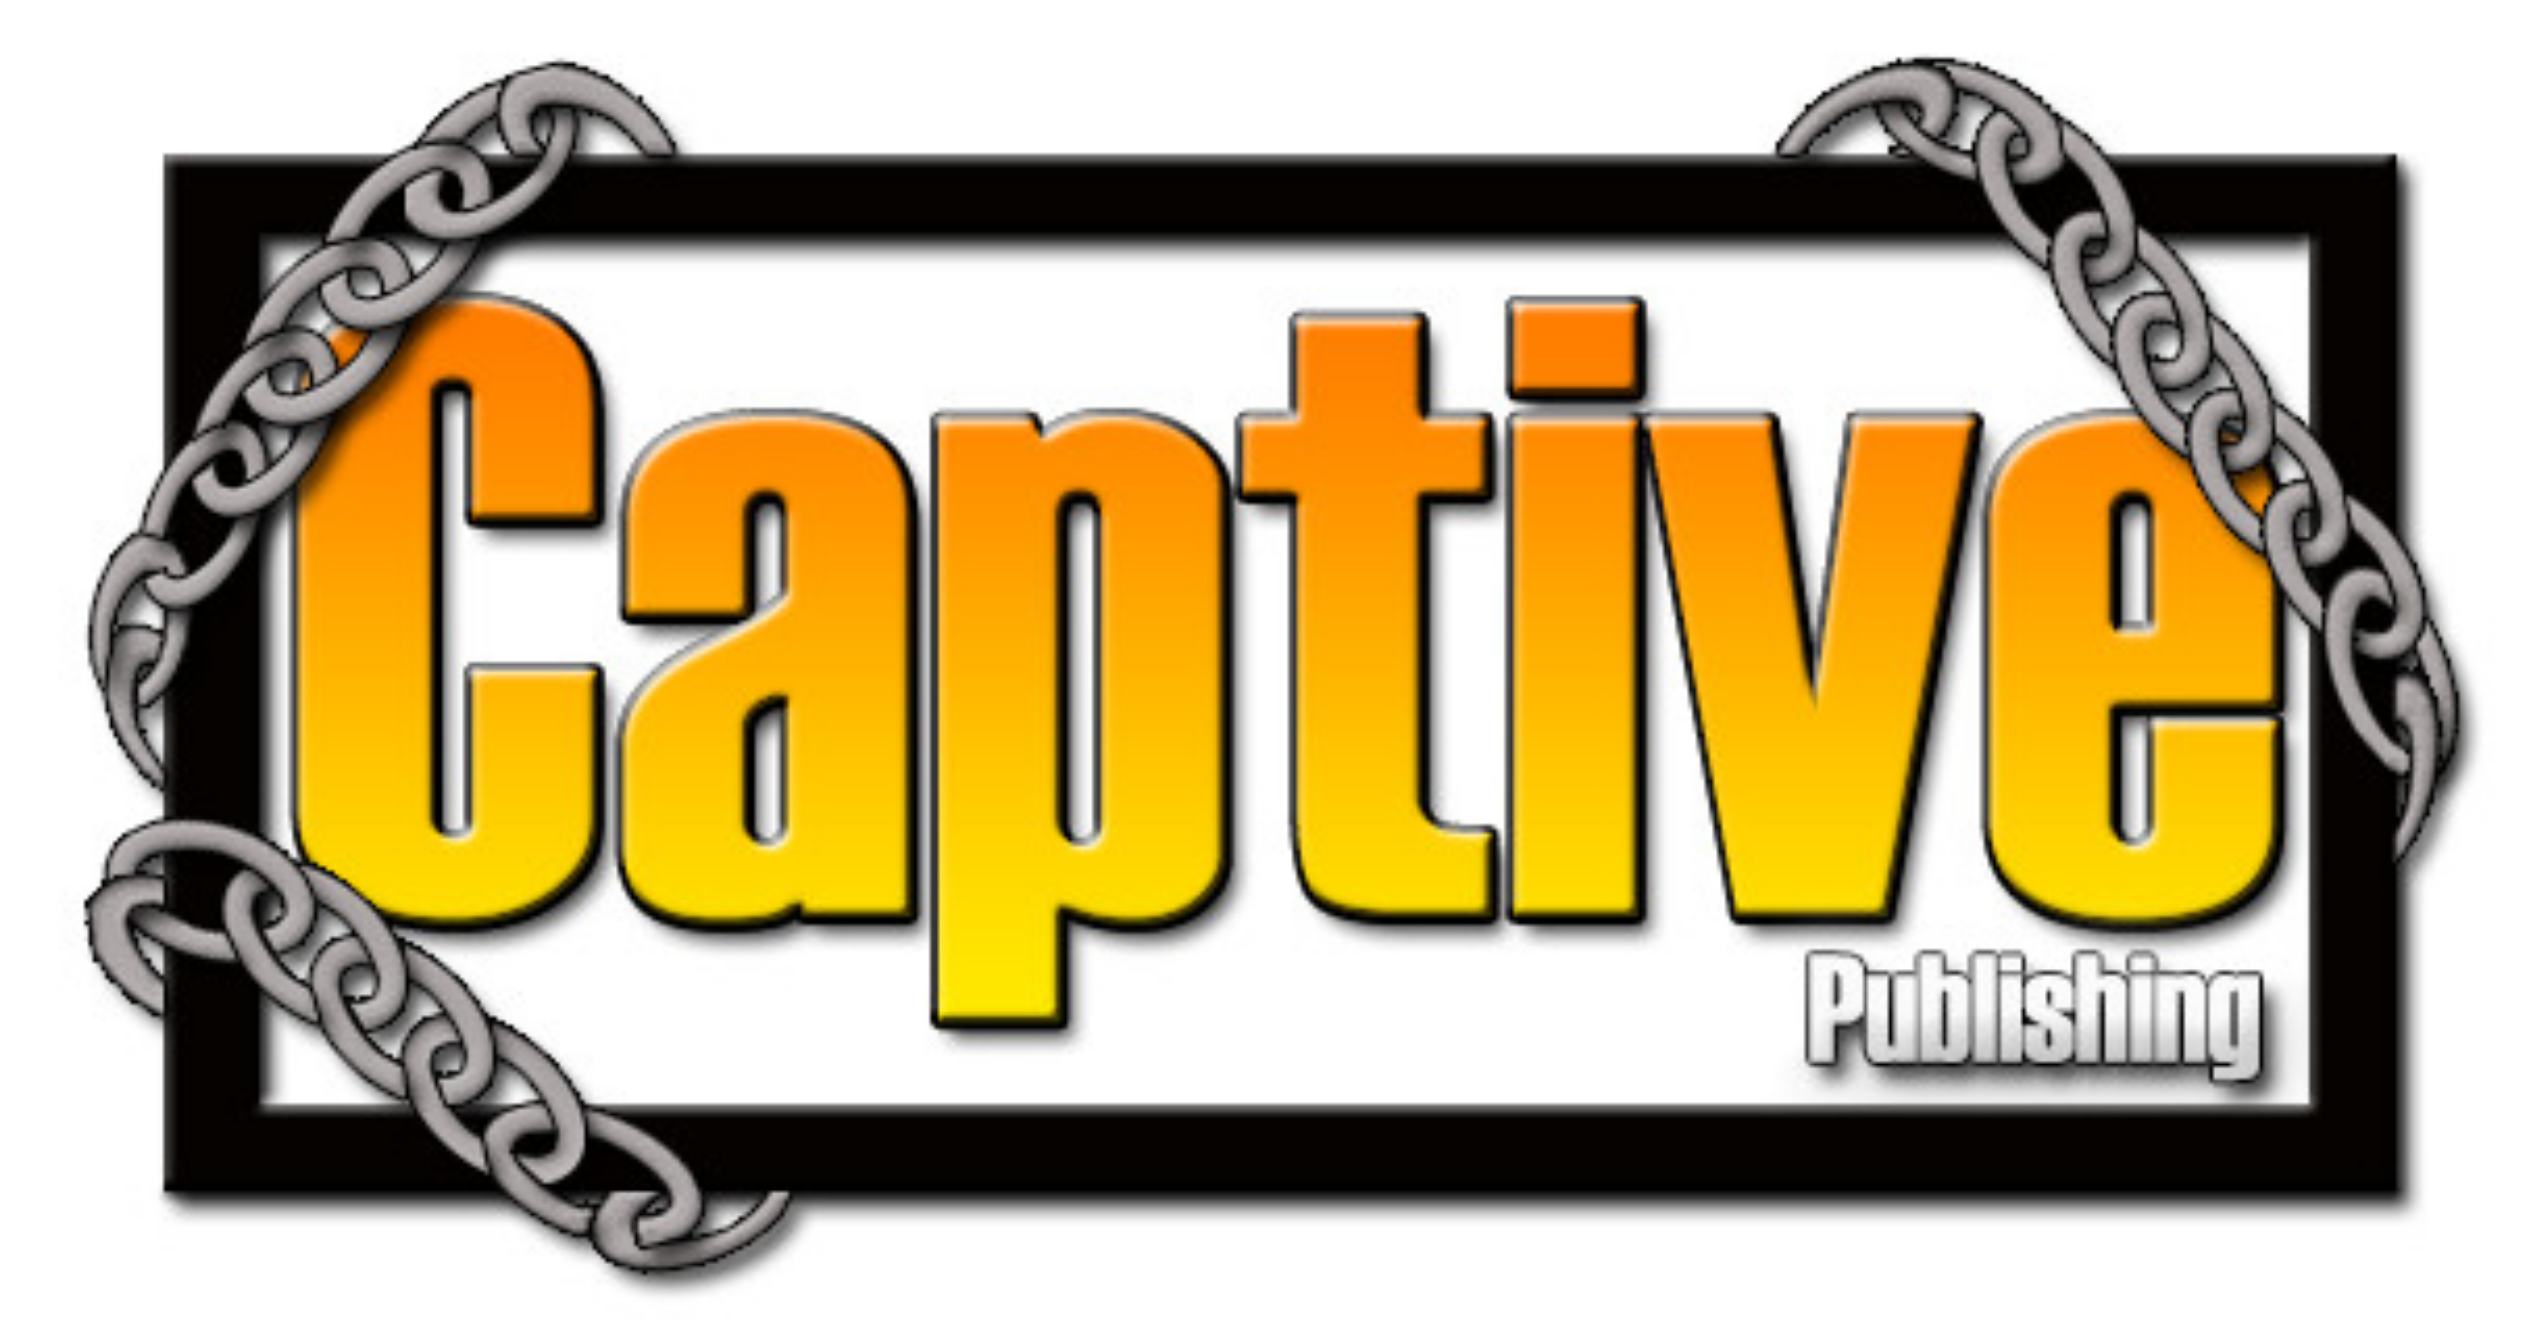 Captive publishing logo